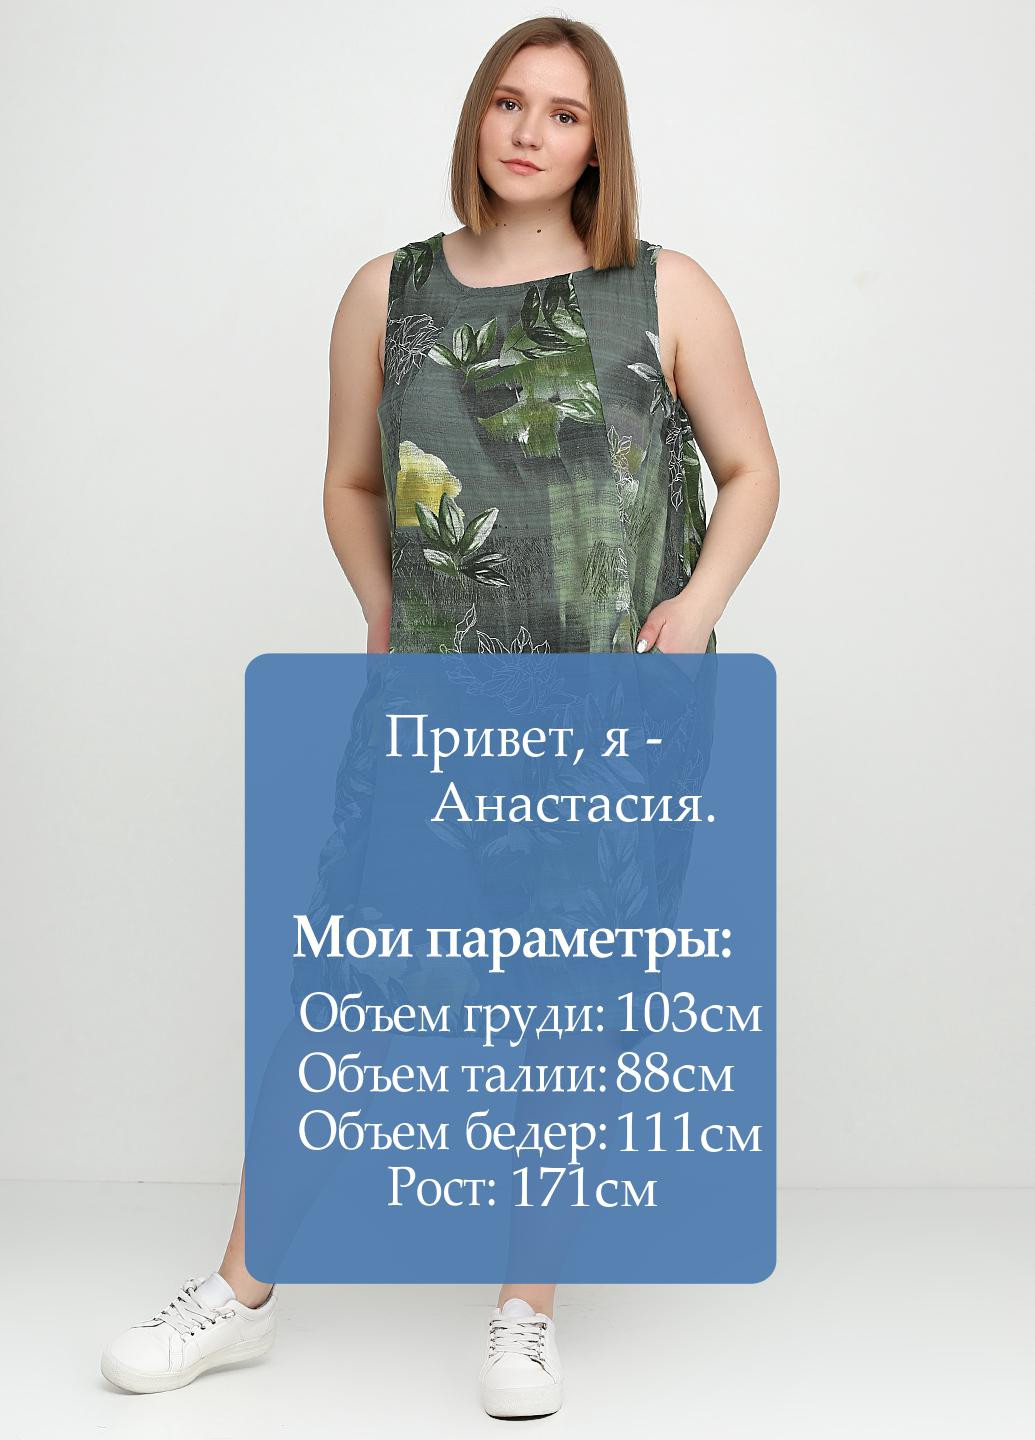 Оливковое (хаки) кэжуал платье New Colection с рисунком